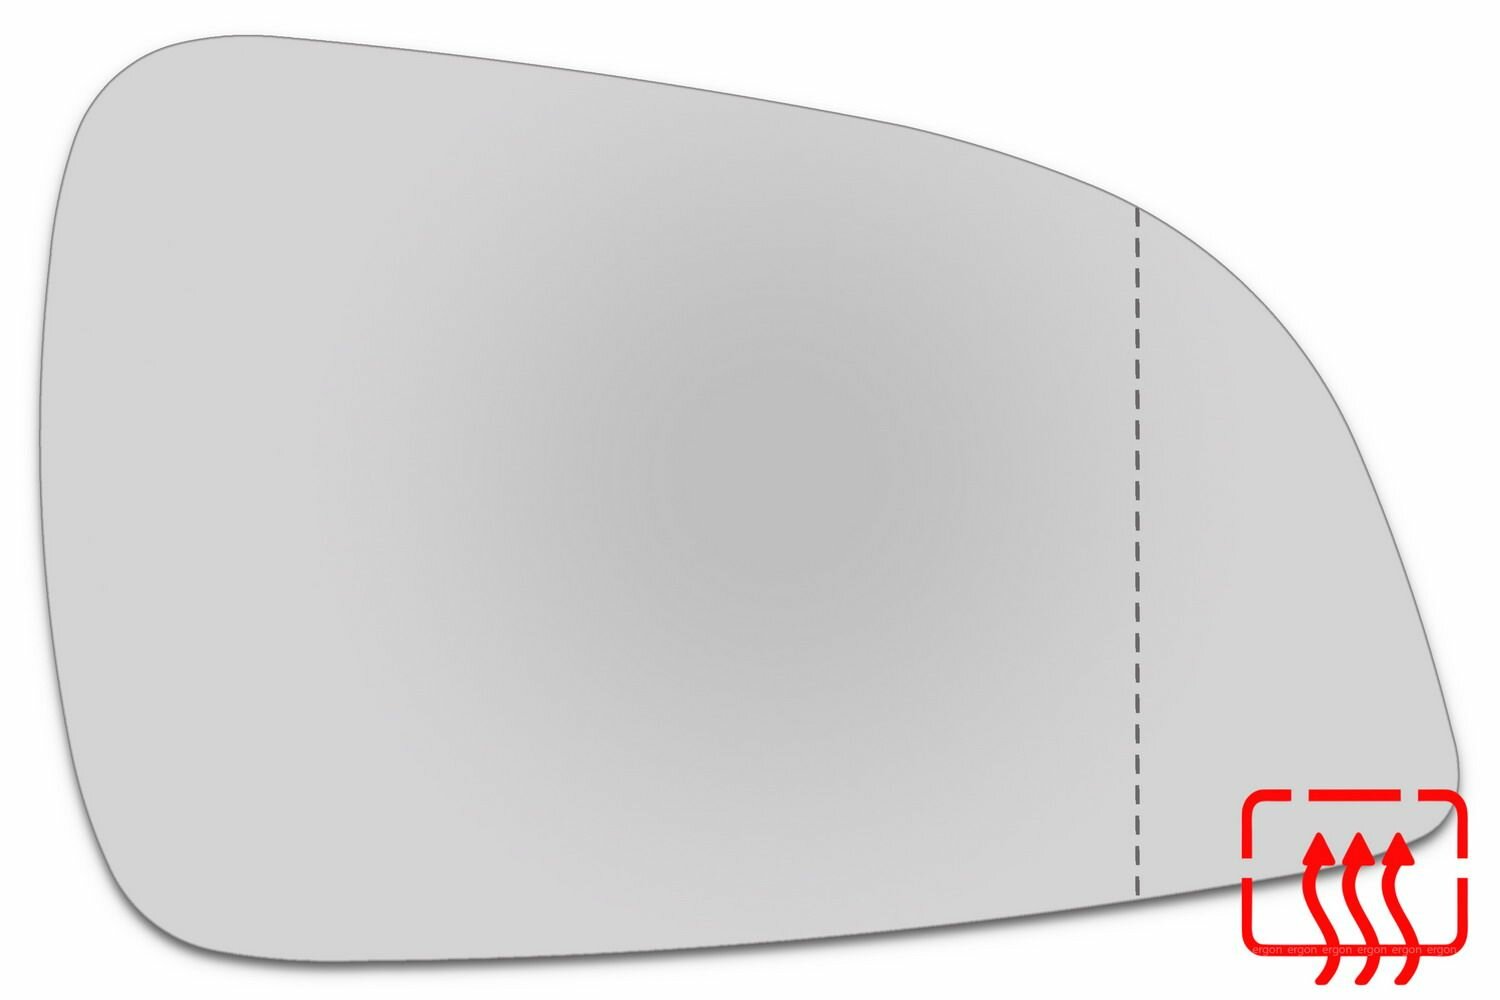 Зеркальный элемент правый OPEL Astra H (10-15) асферика нейтральный с обогревом. Размер зеркального элемента по центральной оси: высота -115 мм, длина - 177 мм.